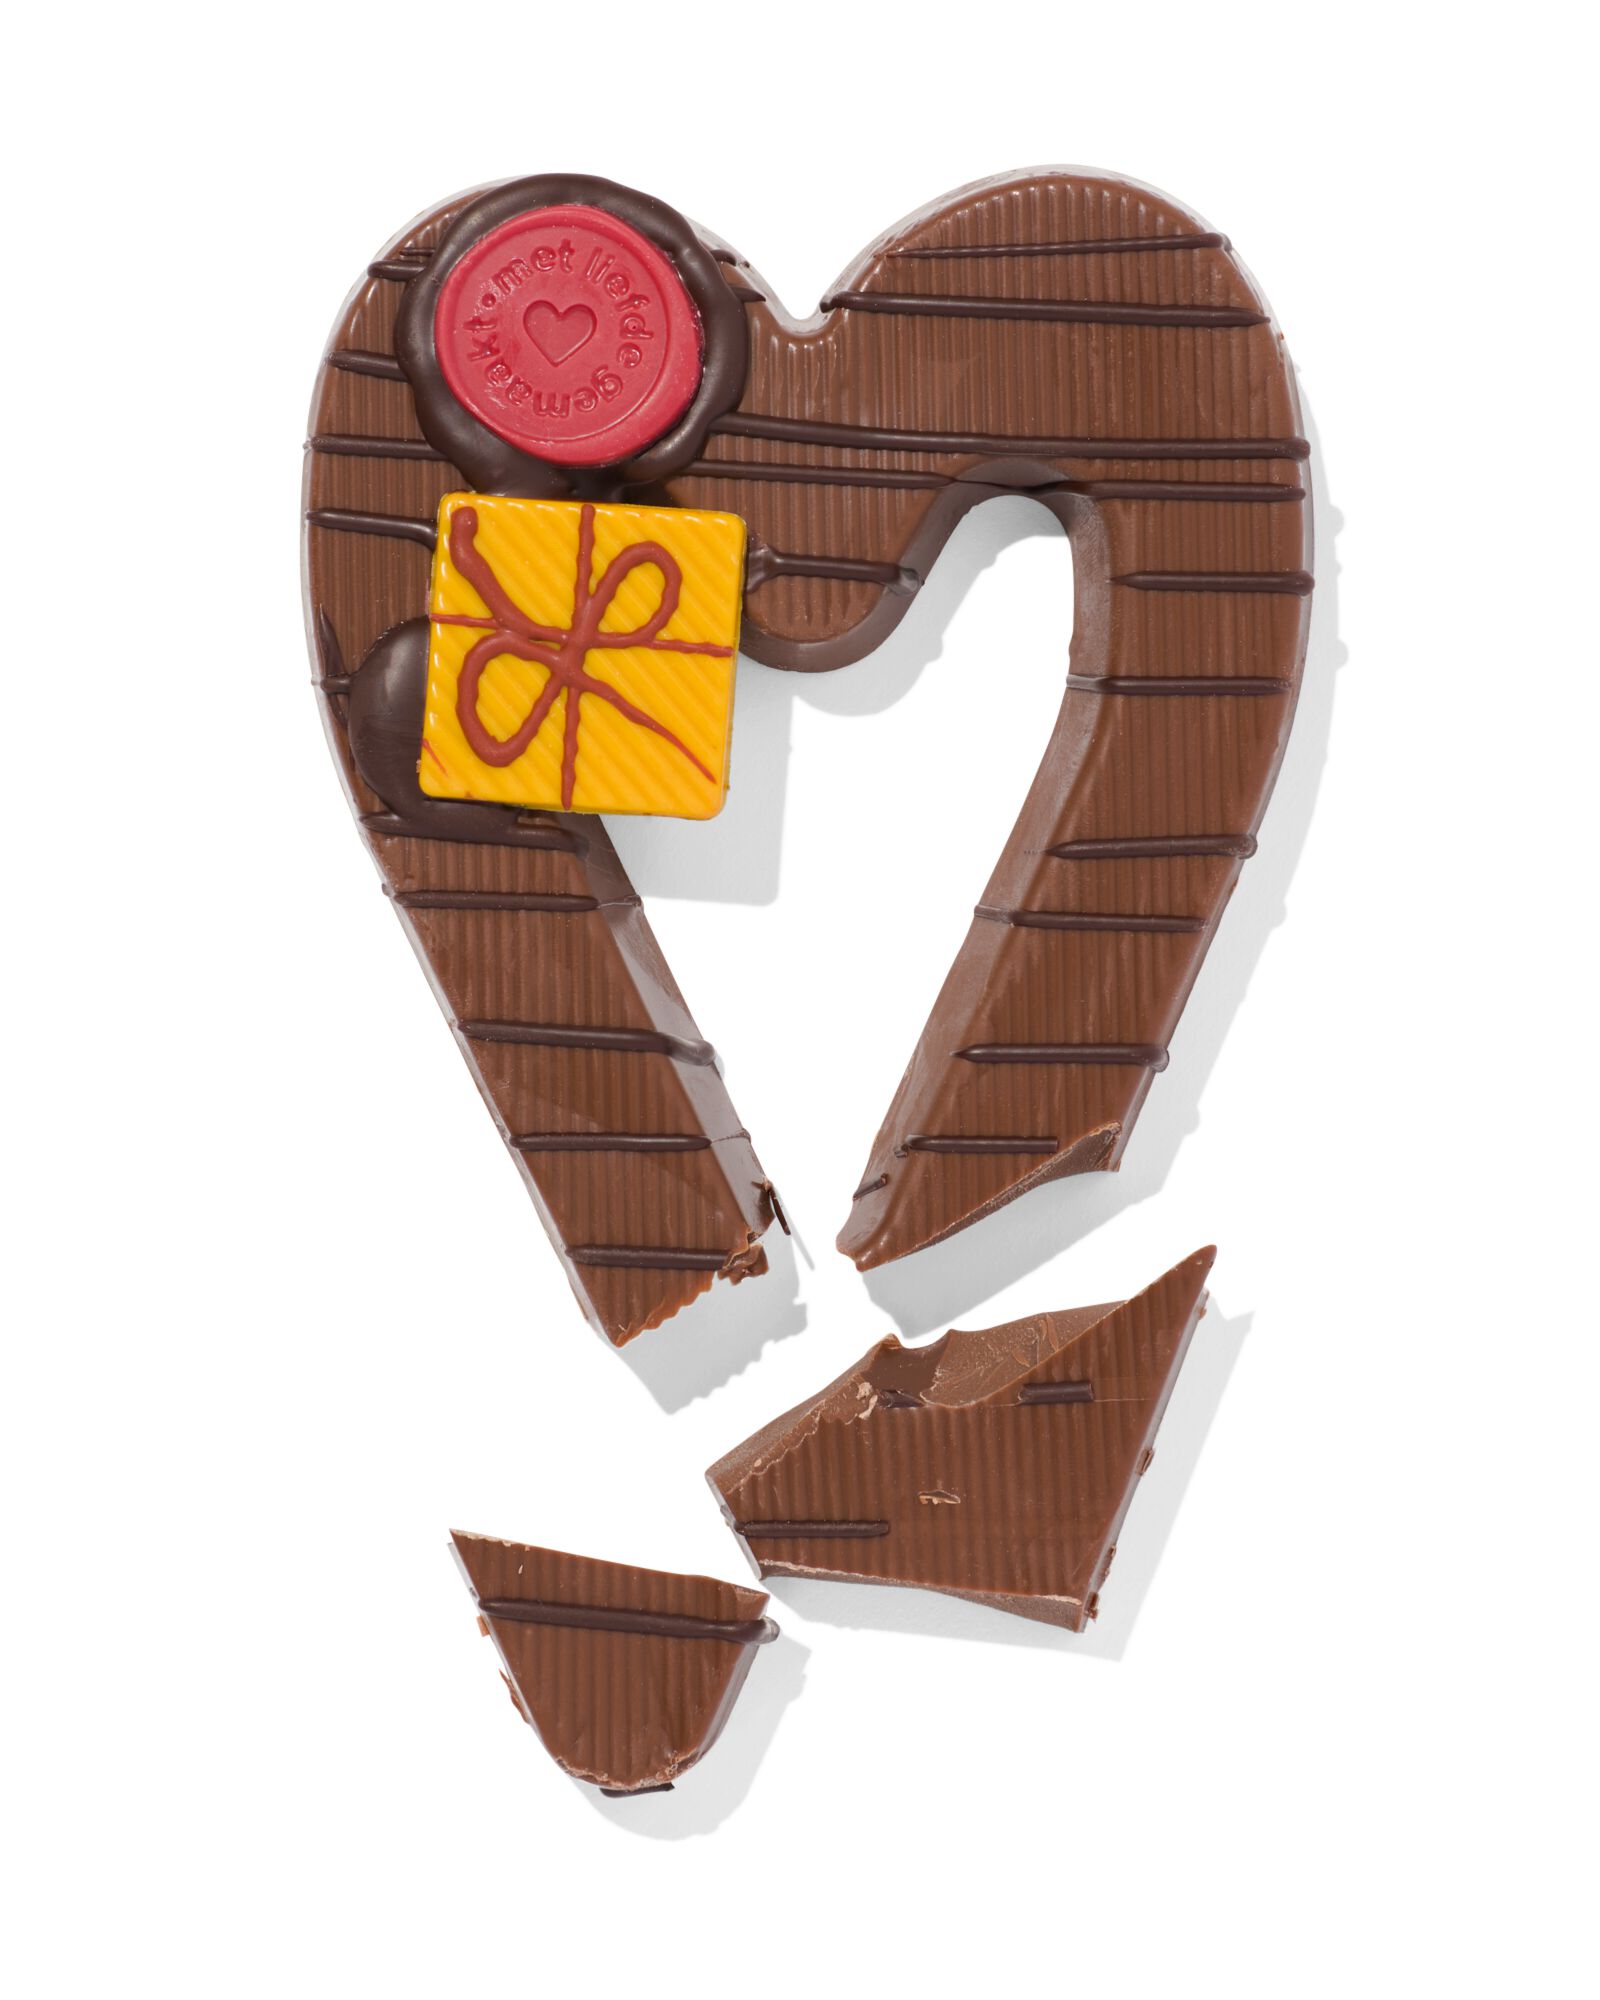 handgedecoreerde melkchocolade hart 200gram - 24427030 - HEMA